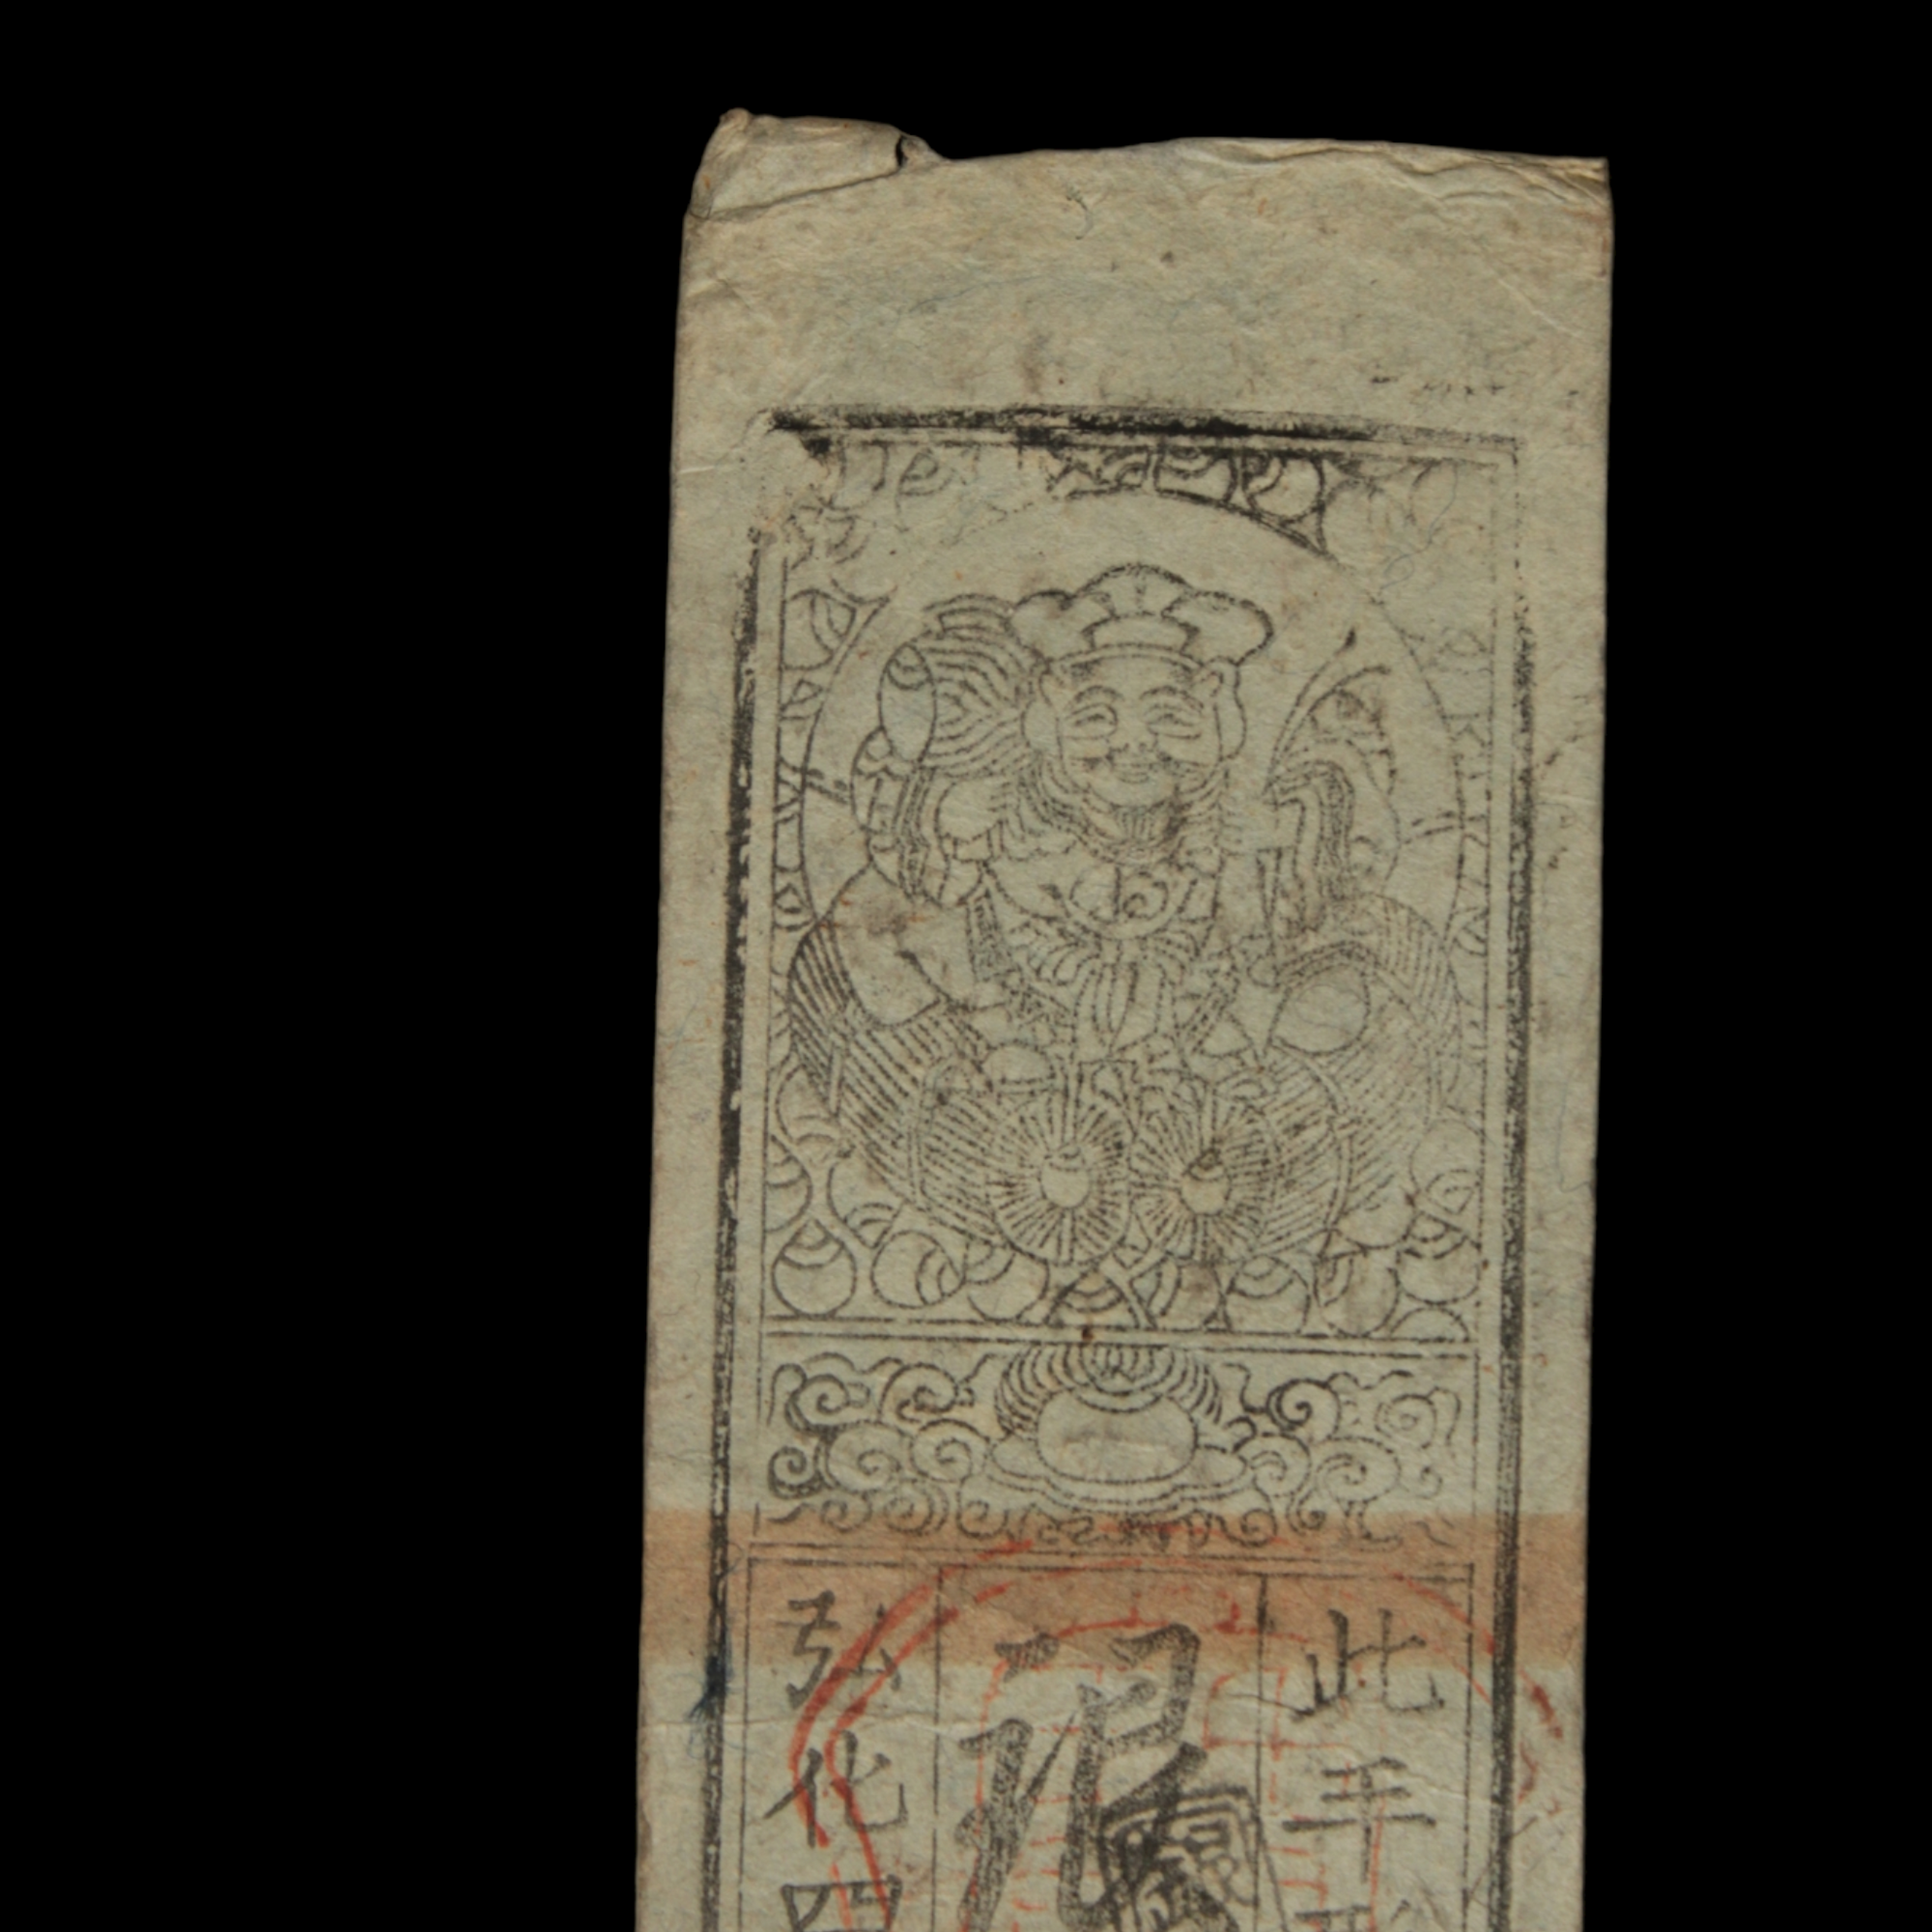 Hansatsu, 1 Silver Monme, Daikoku & Edbisu - Koka 4 (1847) - Edo Japan - 3/15/23 Auction